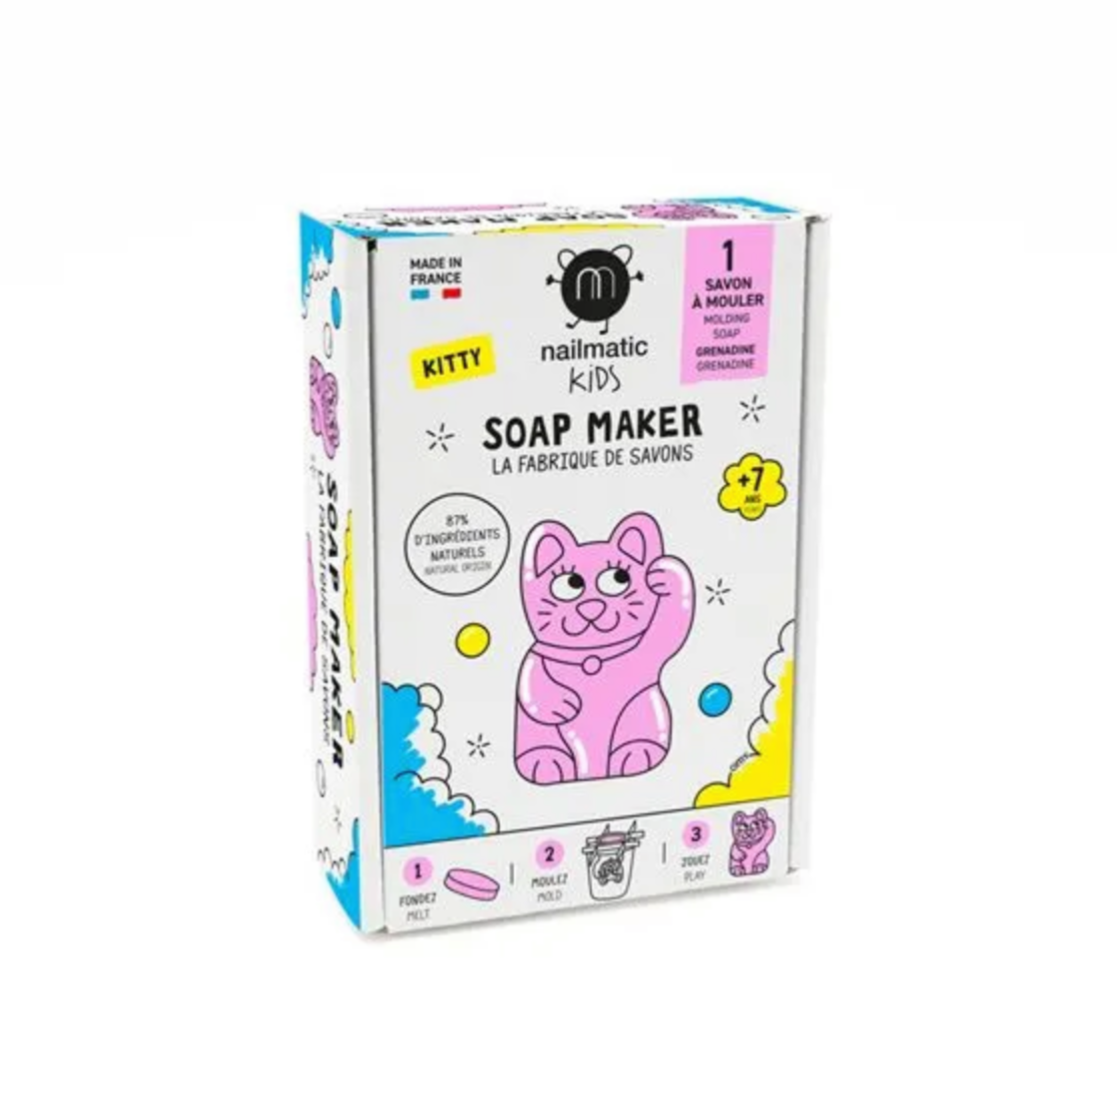 Nailmatic Soap Maker - Kitty